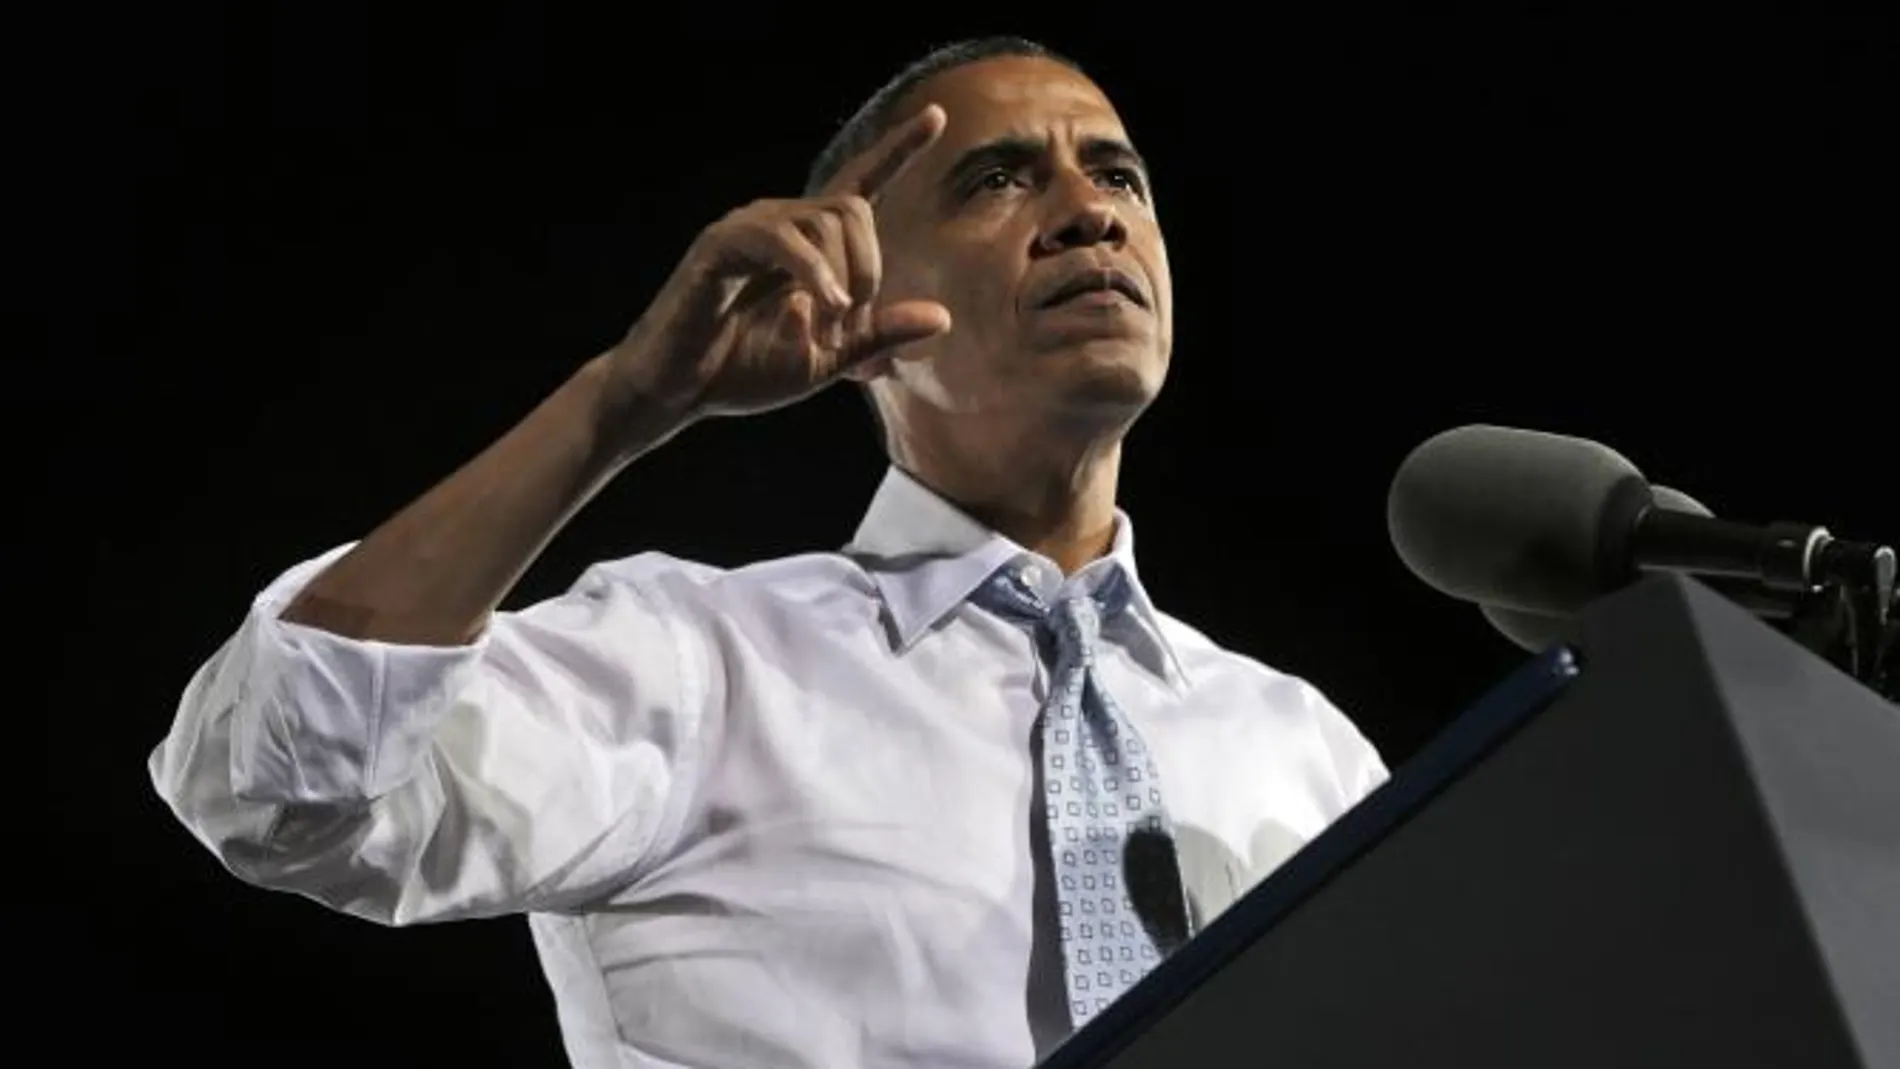 Obama llega al primer debate con ventaja frente a Romney